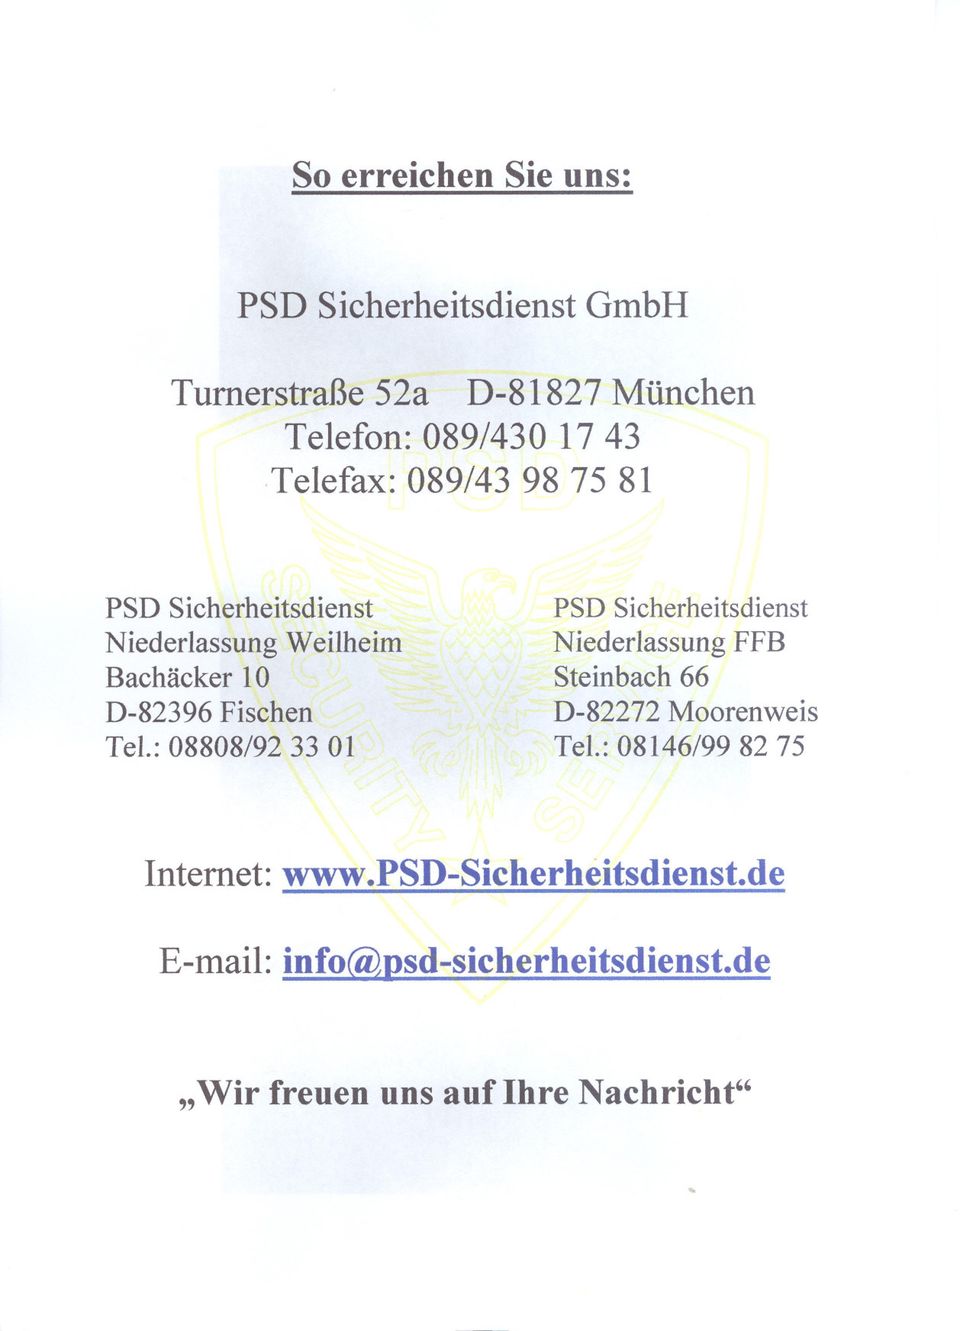 : 08808/92 33 01 PSD Sicherheitsdienst Niederlassung FFB Steinbach 66 D-82272 Moorenweis Tel.